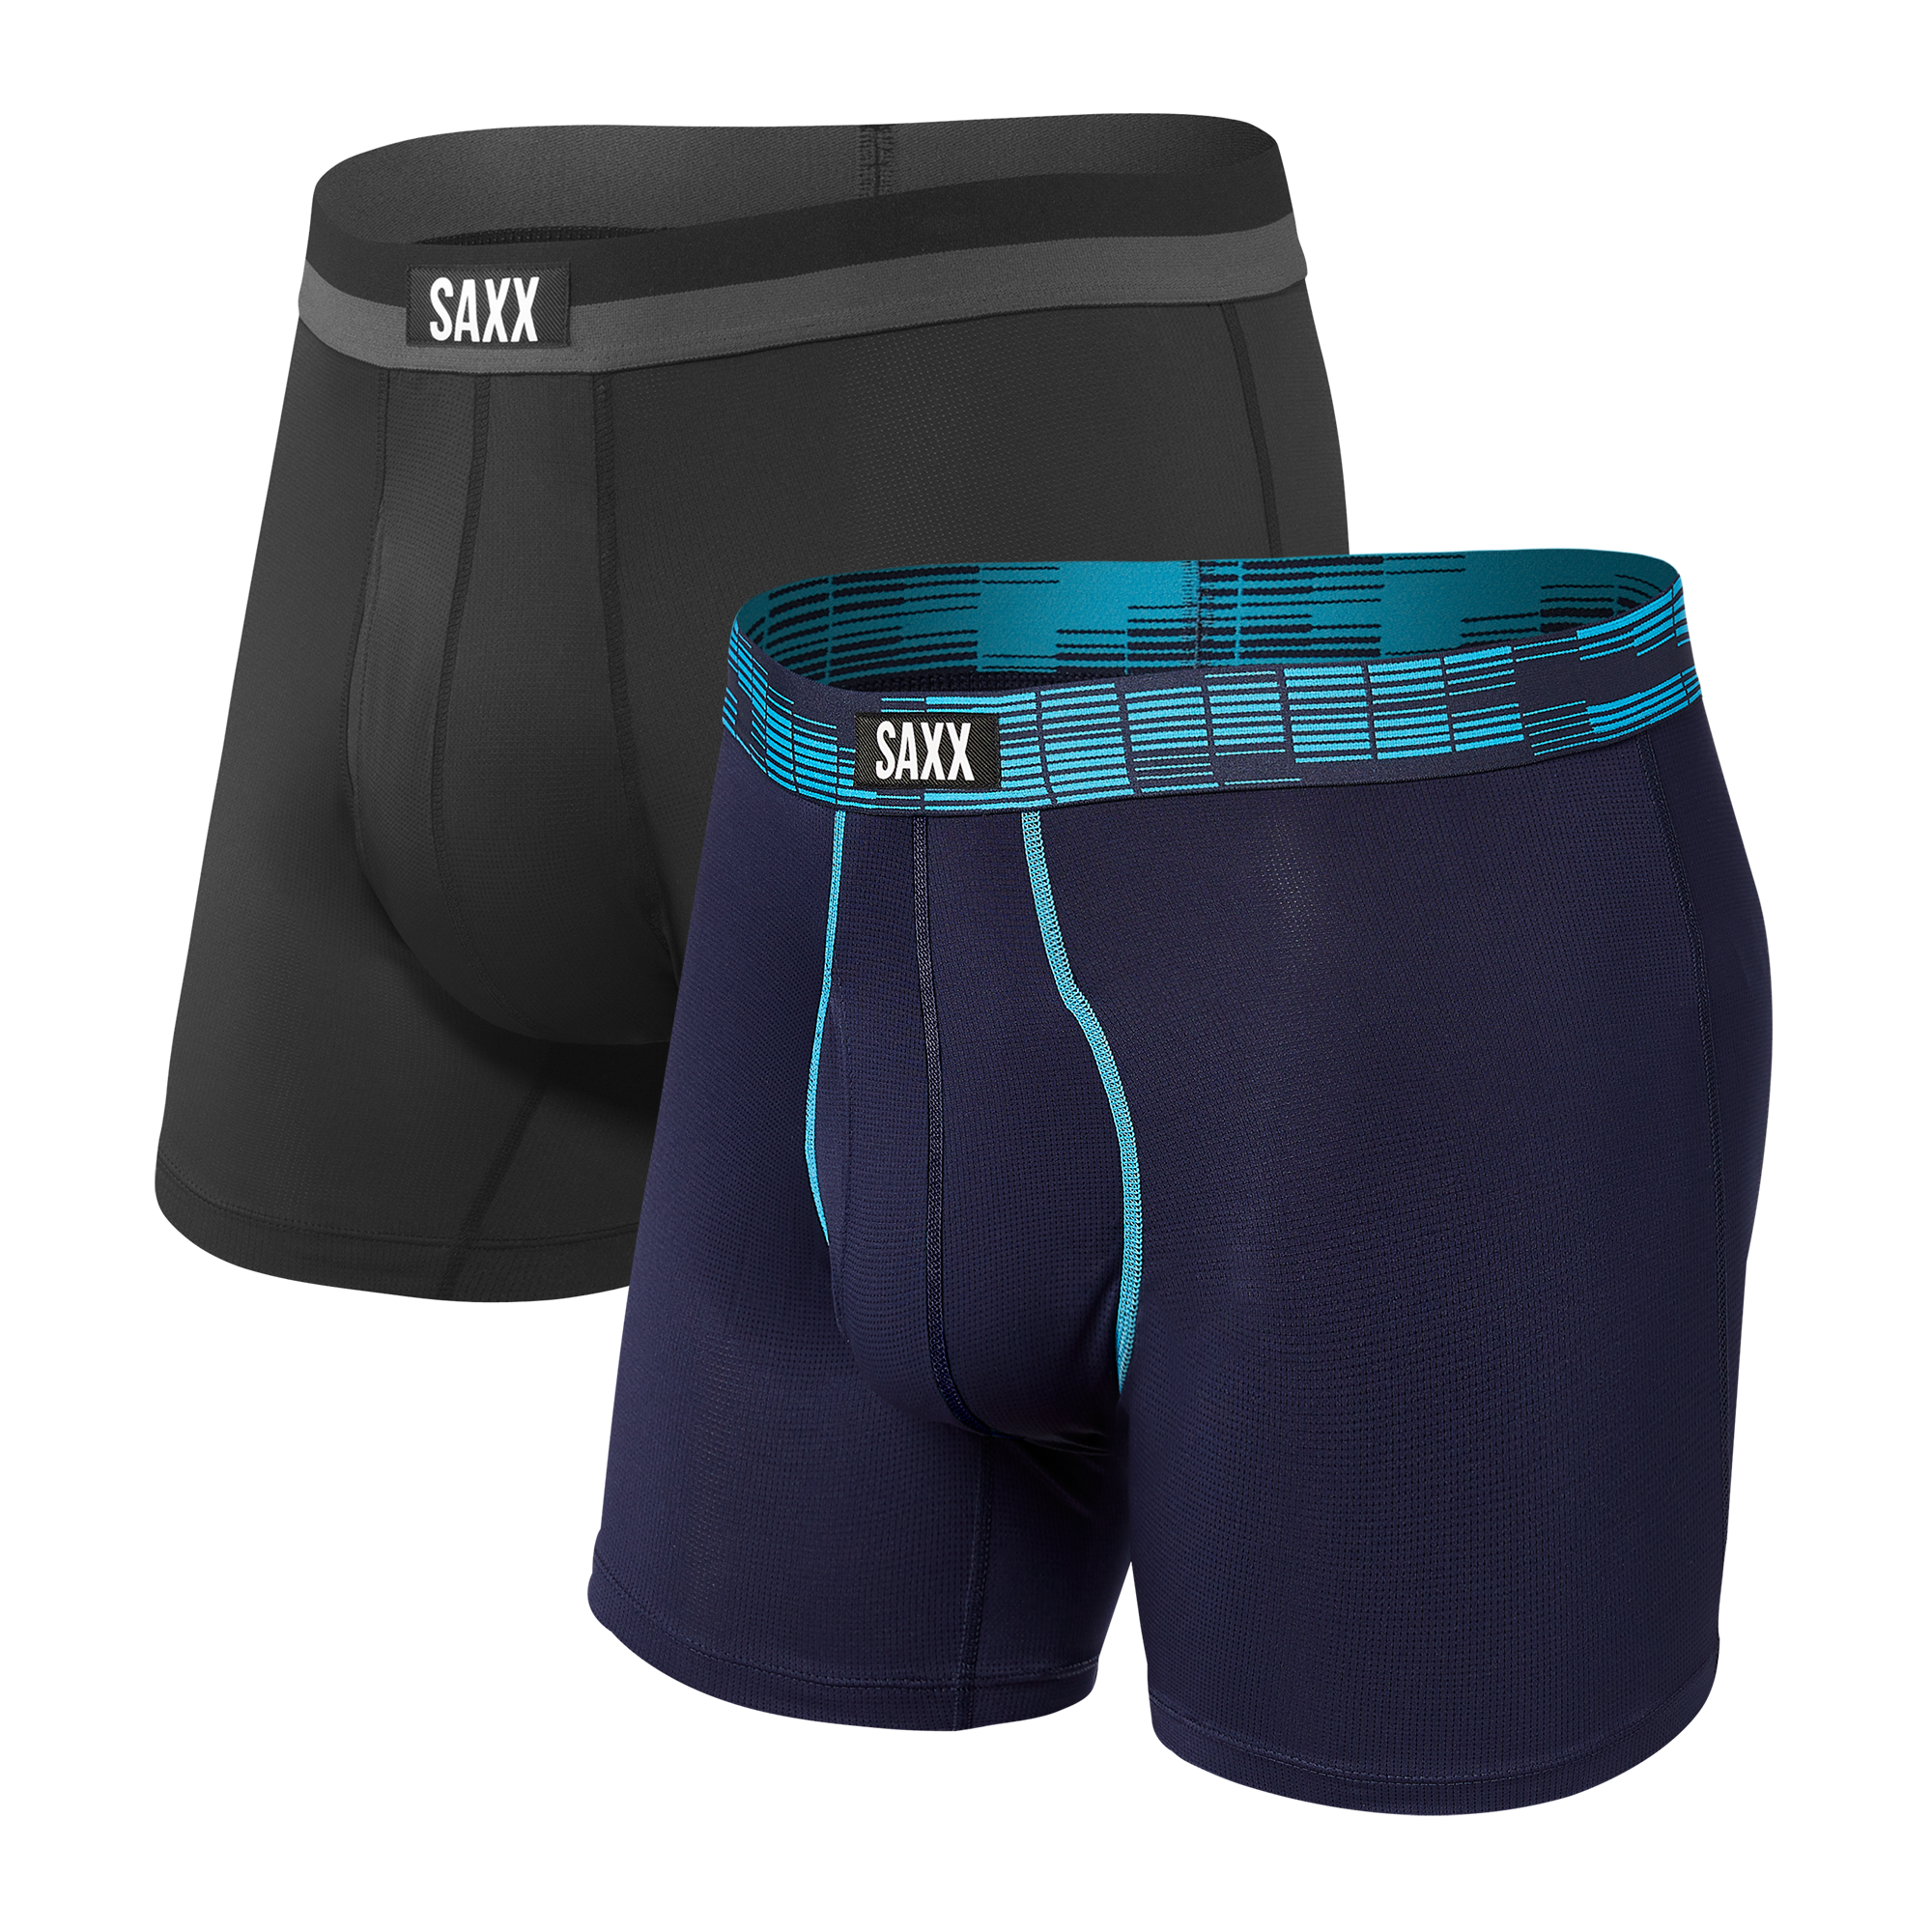 Saxx Droptemp Cooling Cotton Dark Ink Trunk Underwear TR44 – The